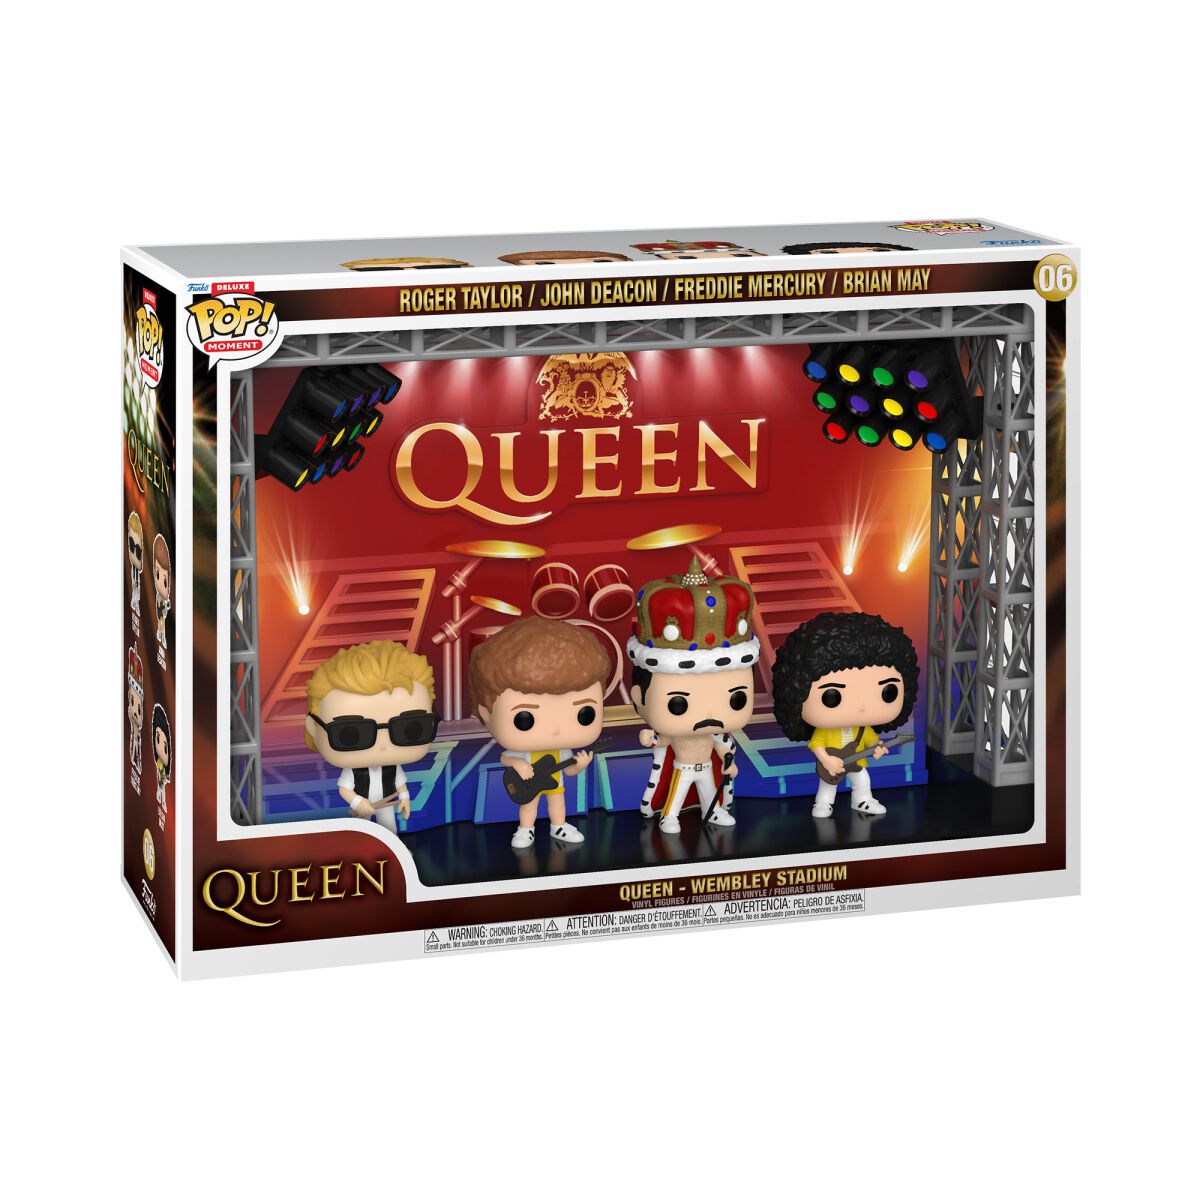 Queen Wembley Stadium (Pop! Moments Deluxe) Vinyl Figur 06 Funko Pop! multicolor